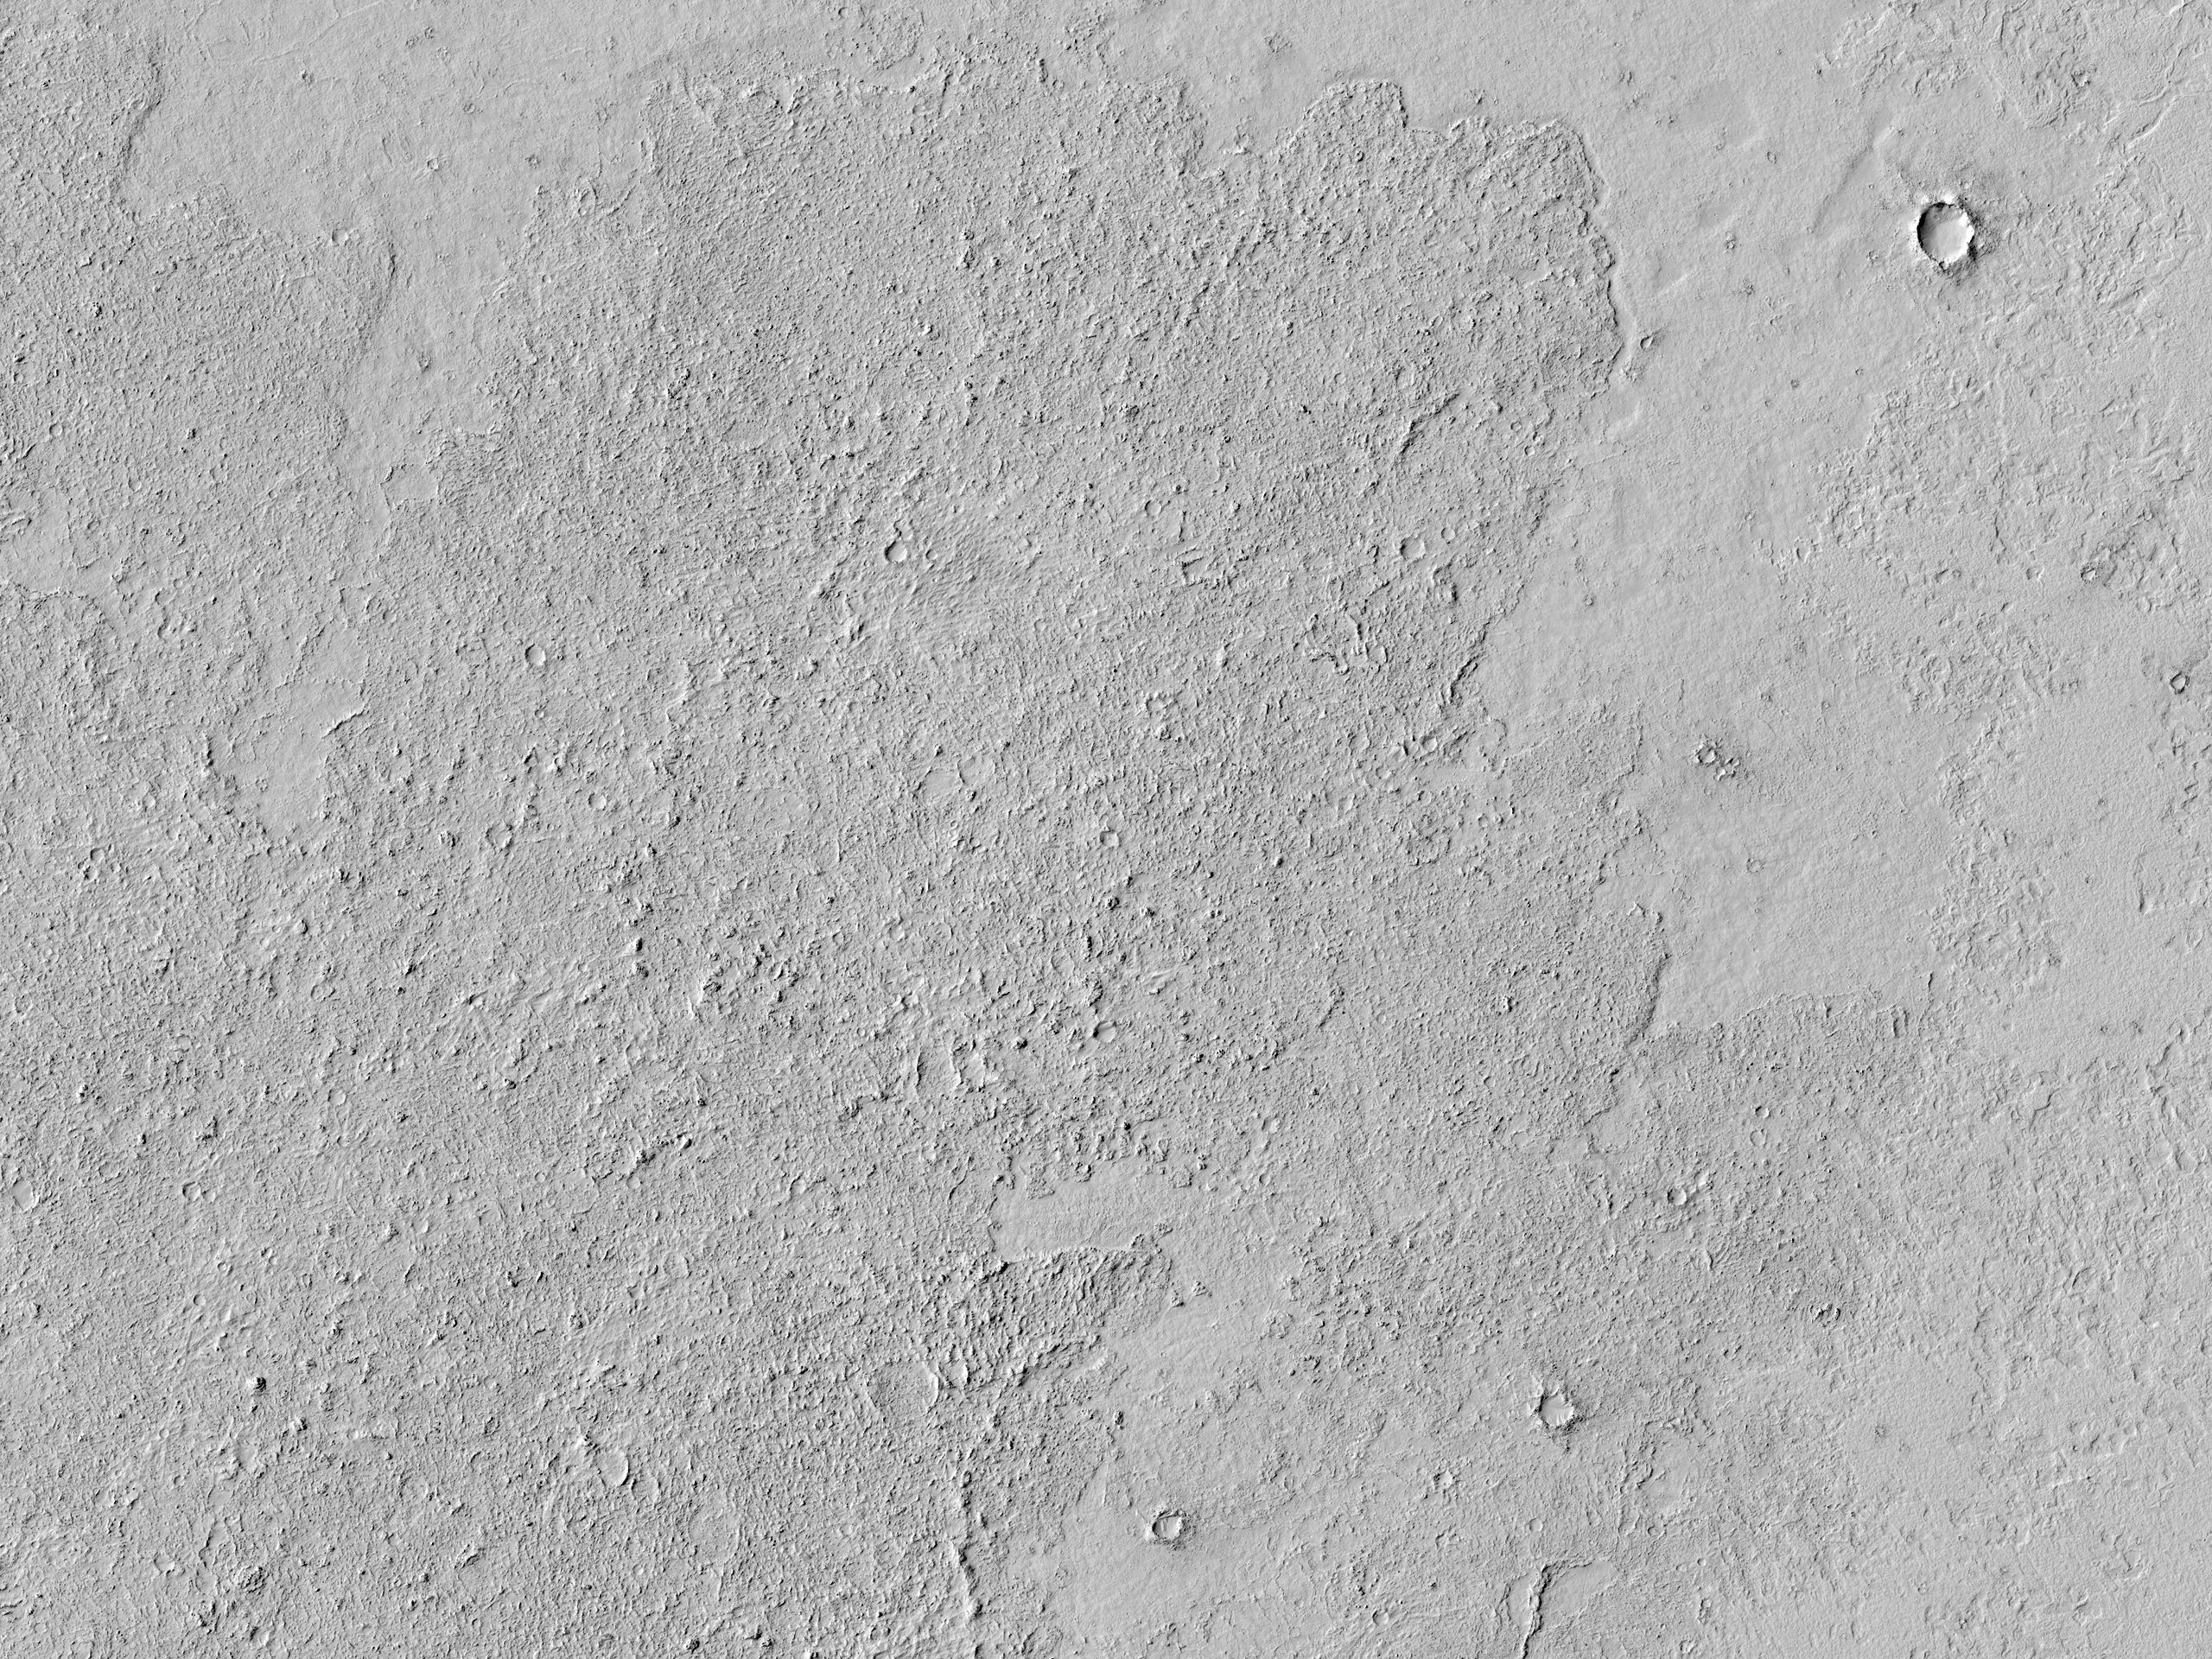 Hraunjaðar á Elysium Planitia 